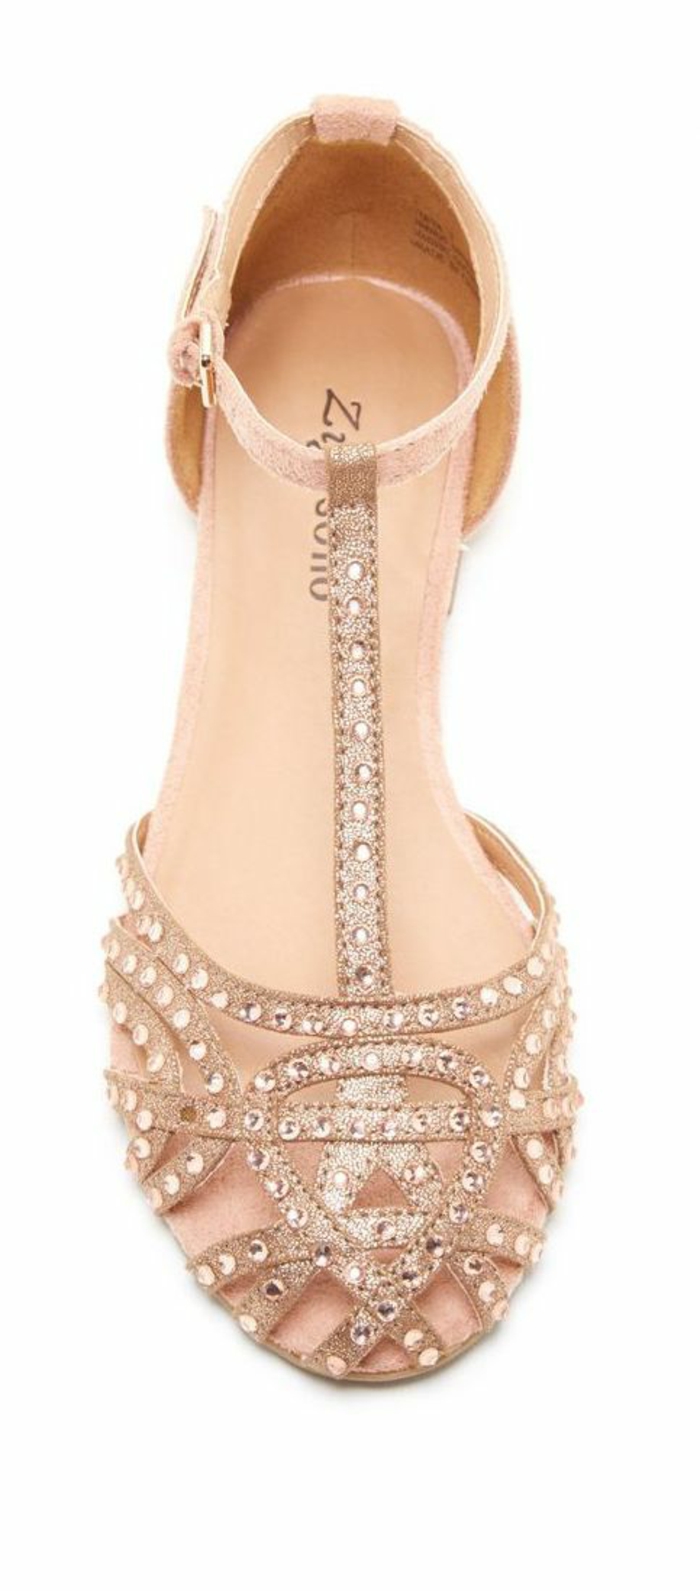 sandales femmes très brillantes doigts couverts style chaussure de danse ballerine